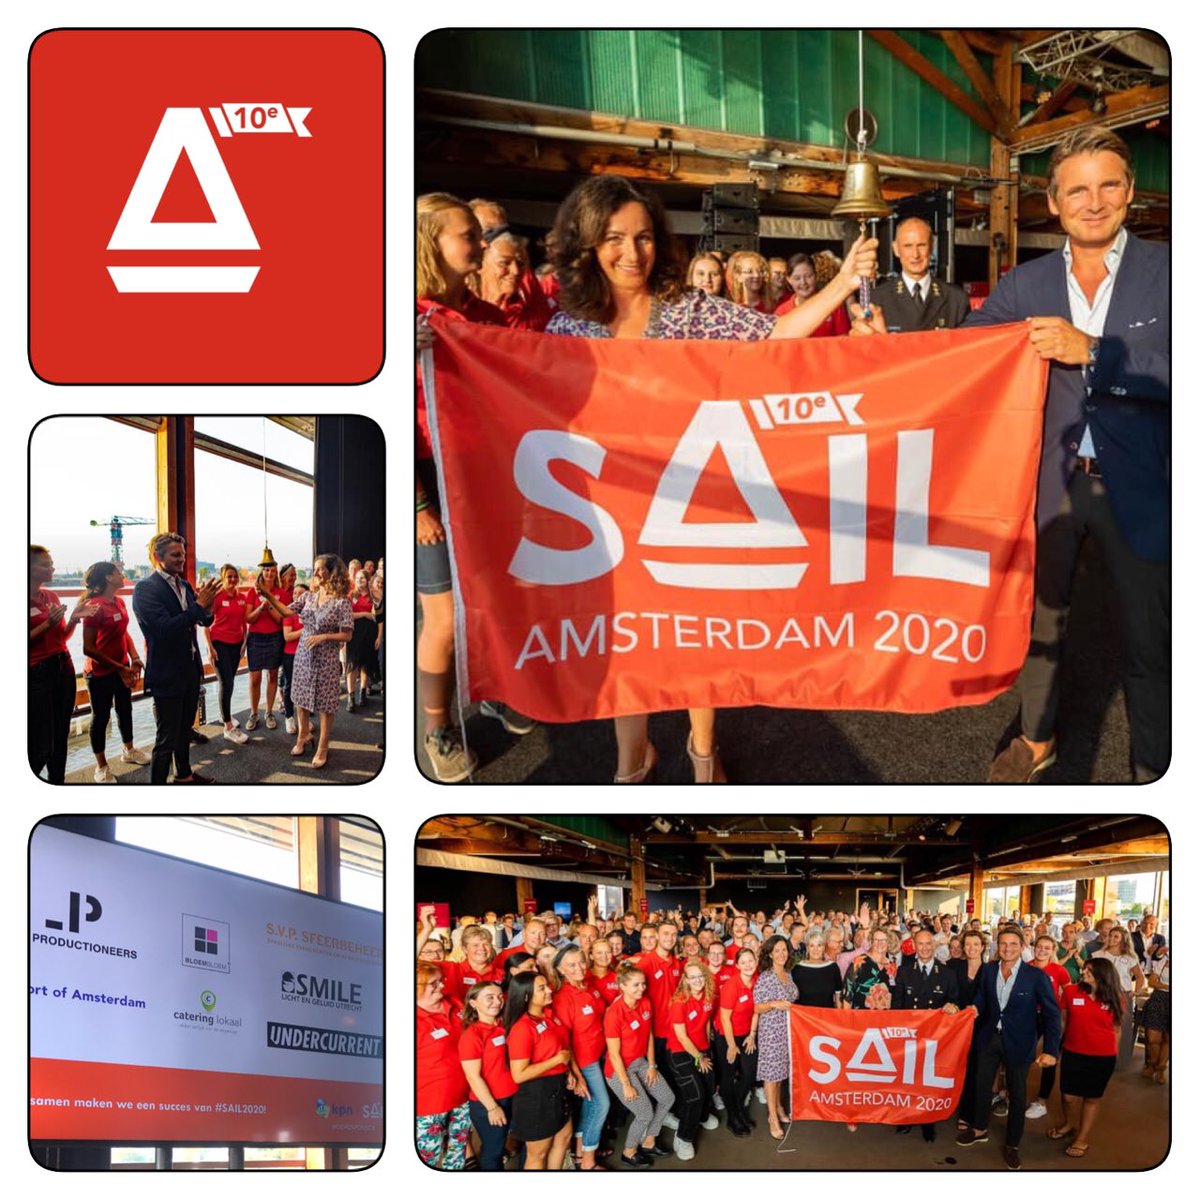 Afgelopen maandag werd het startschot gegeven naar SAIL2020. Nog 361 dagen en het grootste nautische event ter wereld zal voor de 10e keer plaatsvinden in Amsterdam. #sail2020 #AVleverancier #trots #kickoff #SmileUtrecht